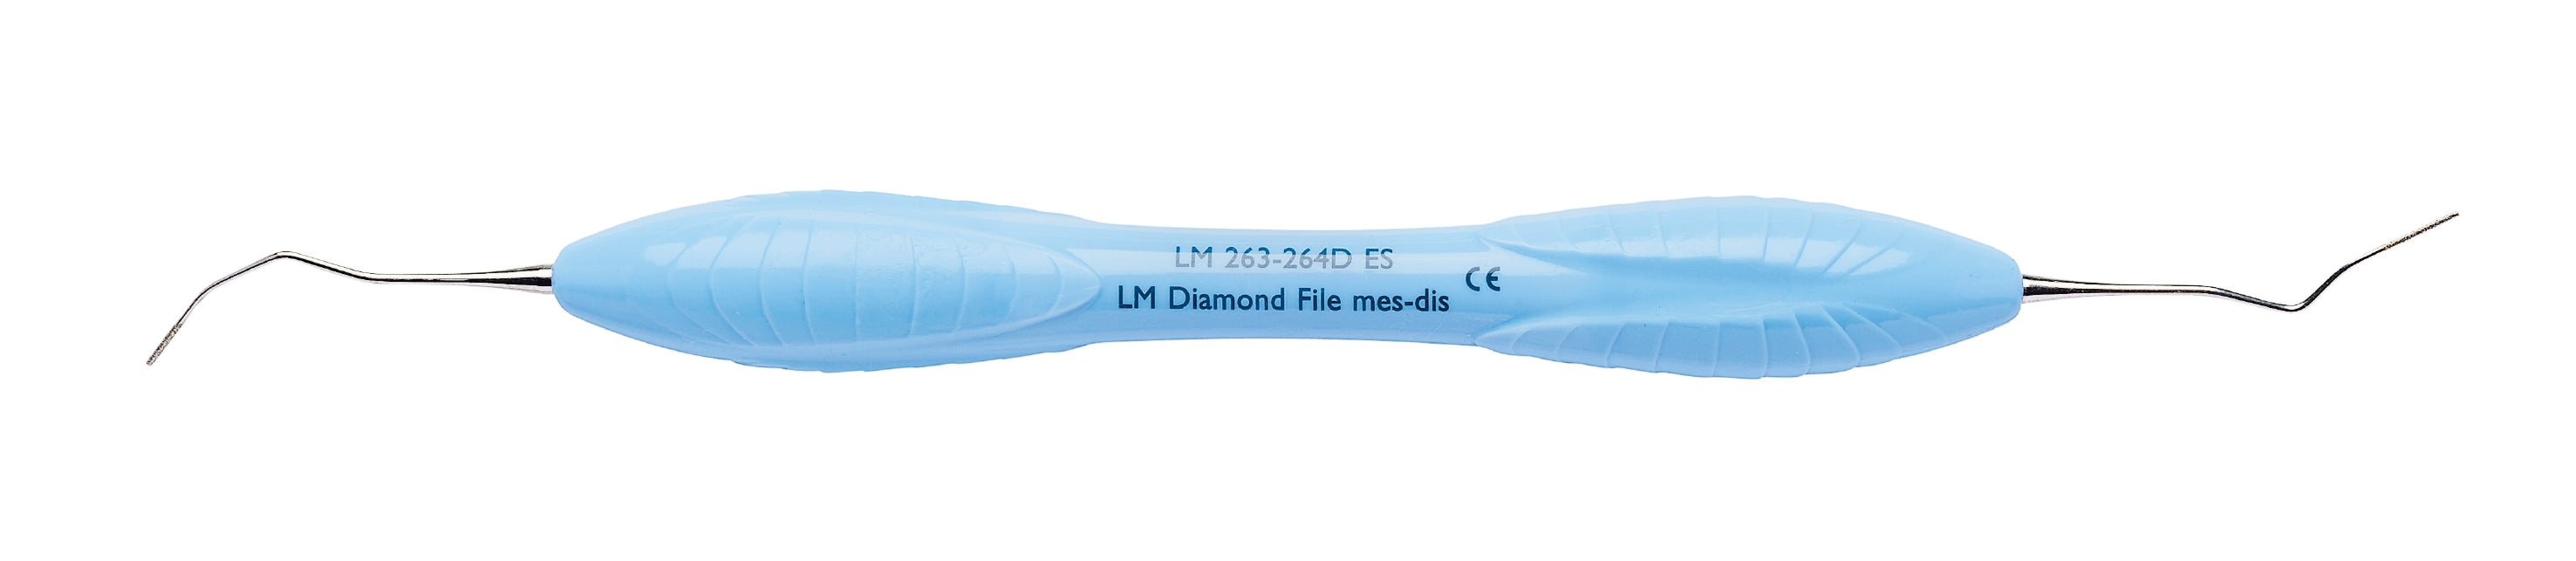 LM 263-264DES Diamond File Mes-Dist ES